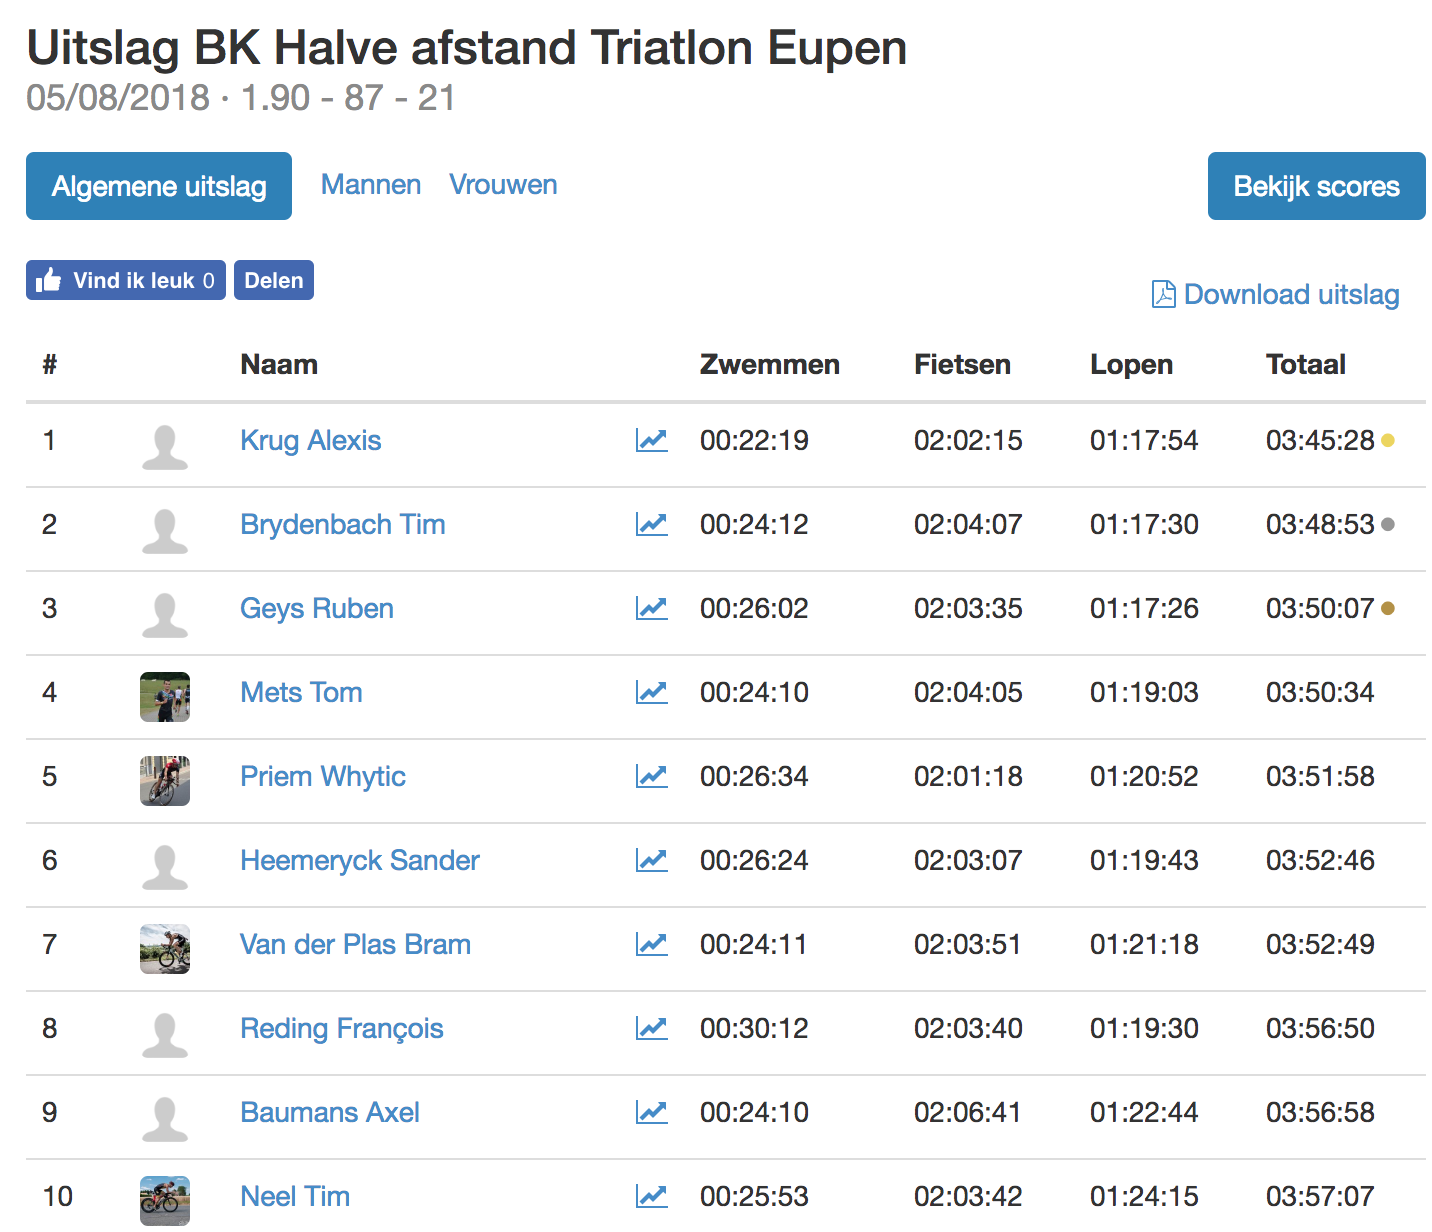 Triatlonwedstrijden be · Uitslag BK Halve afstand Triatlon Eupen 2018